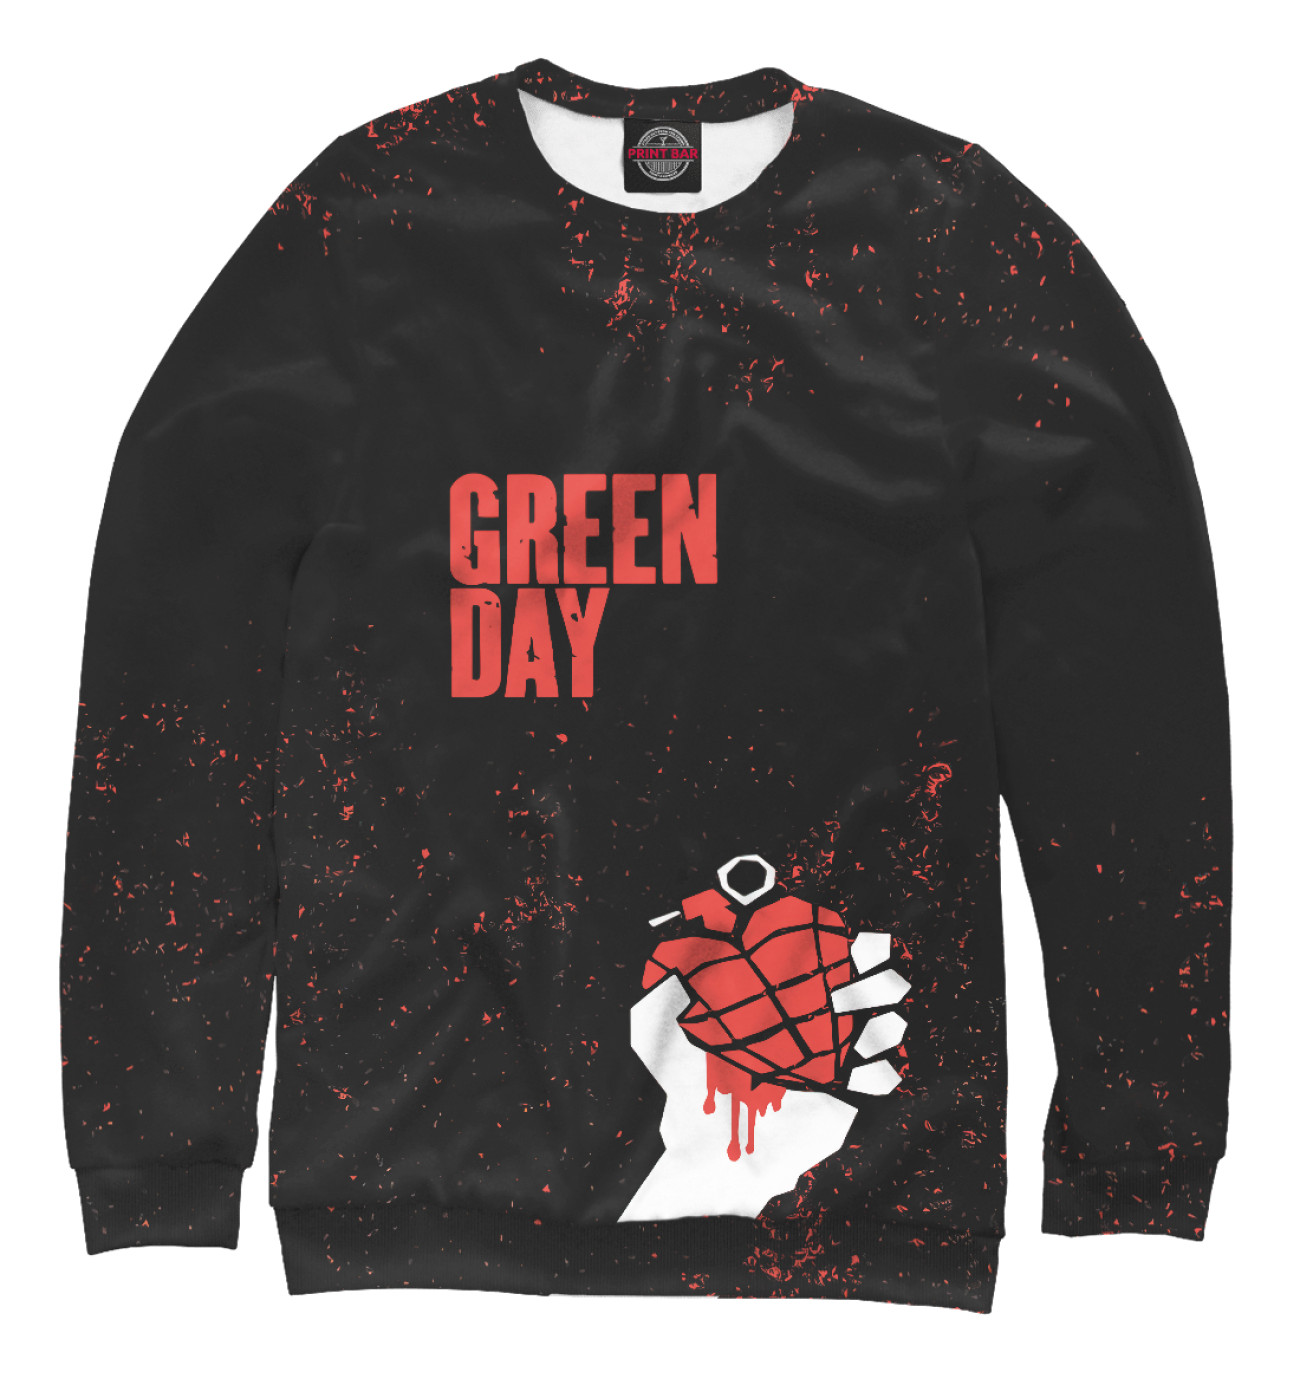 Женский Свитшот Green Day, артикул: GRE-108473-swi-1